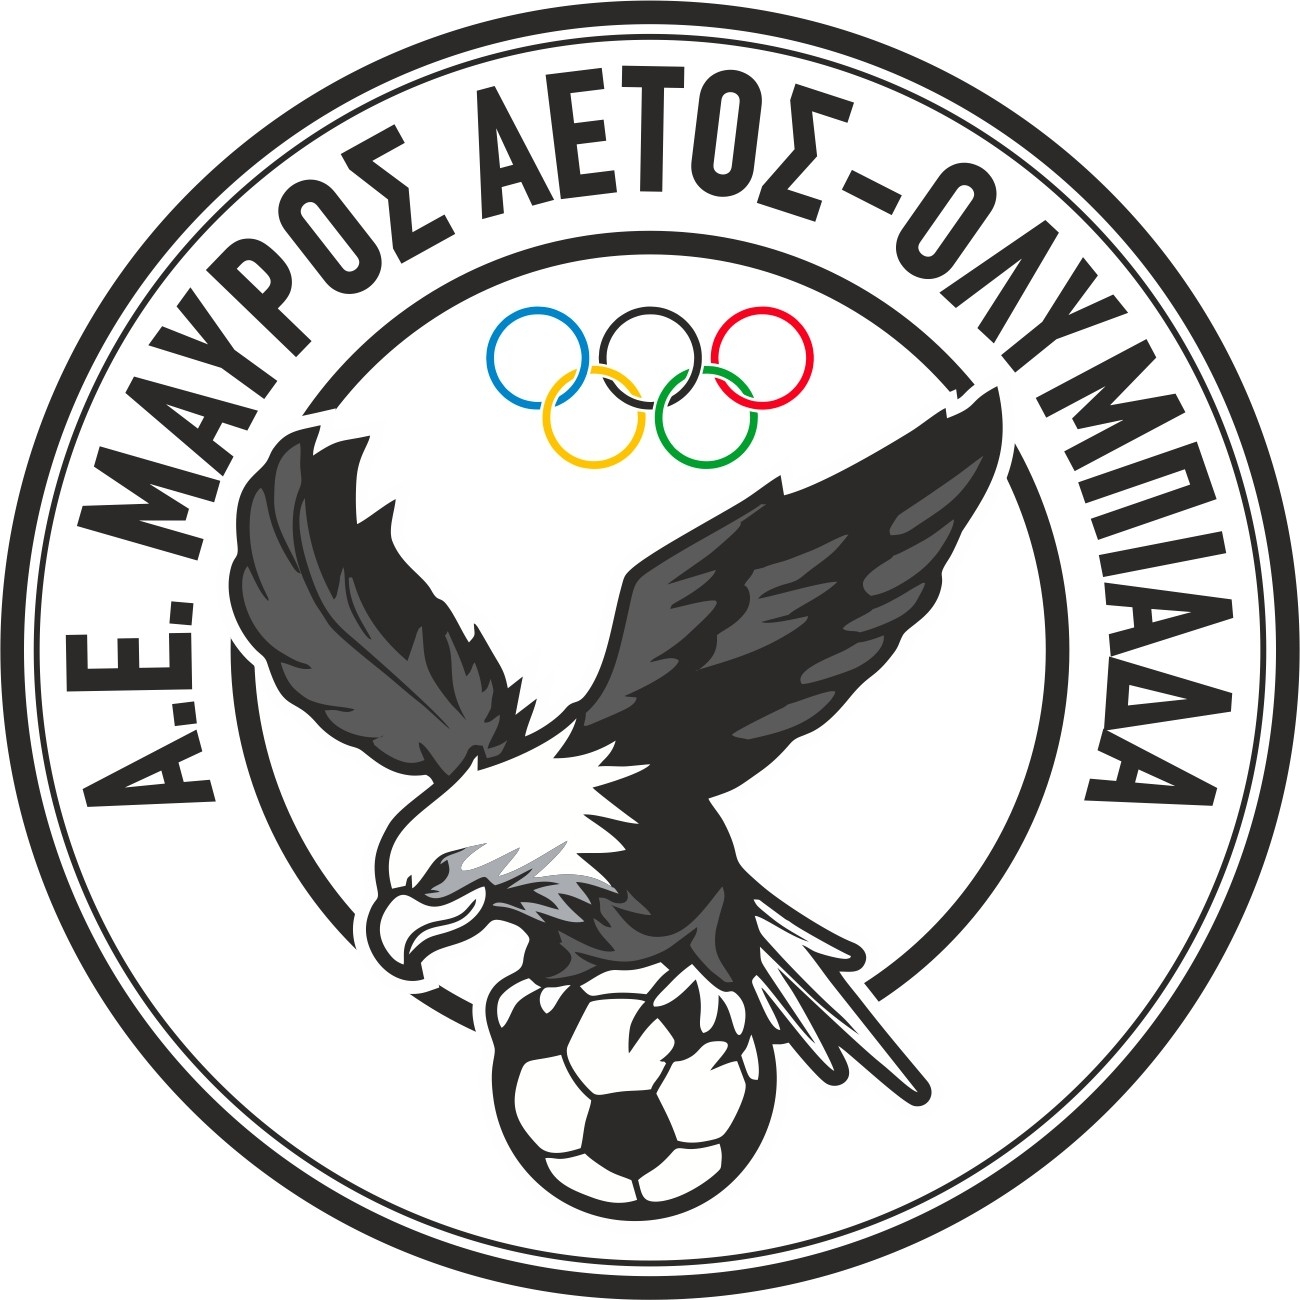 Νικηφόρα πρεμιέρα η ΑΕ Μαύρου Αετού Ολυμπιάδας, 2-0 τον ΑΟ Πειραιά 